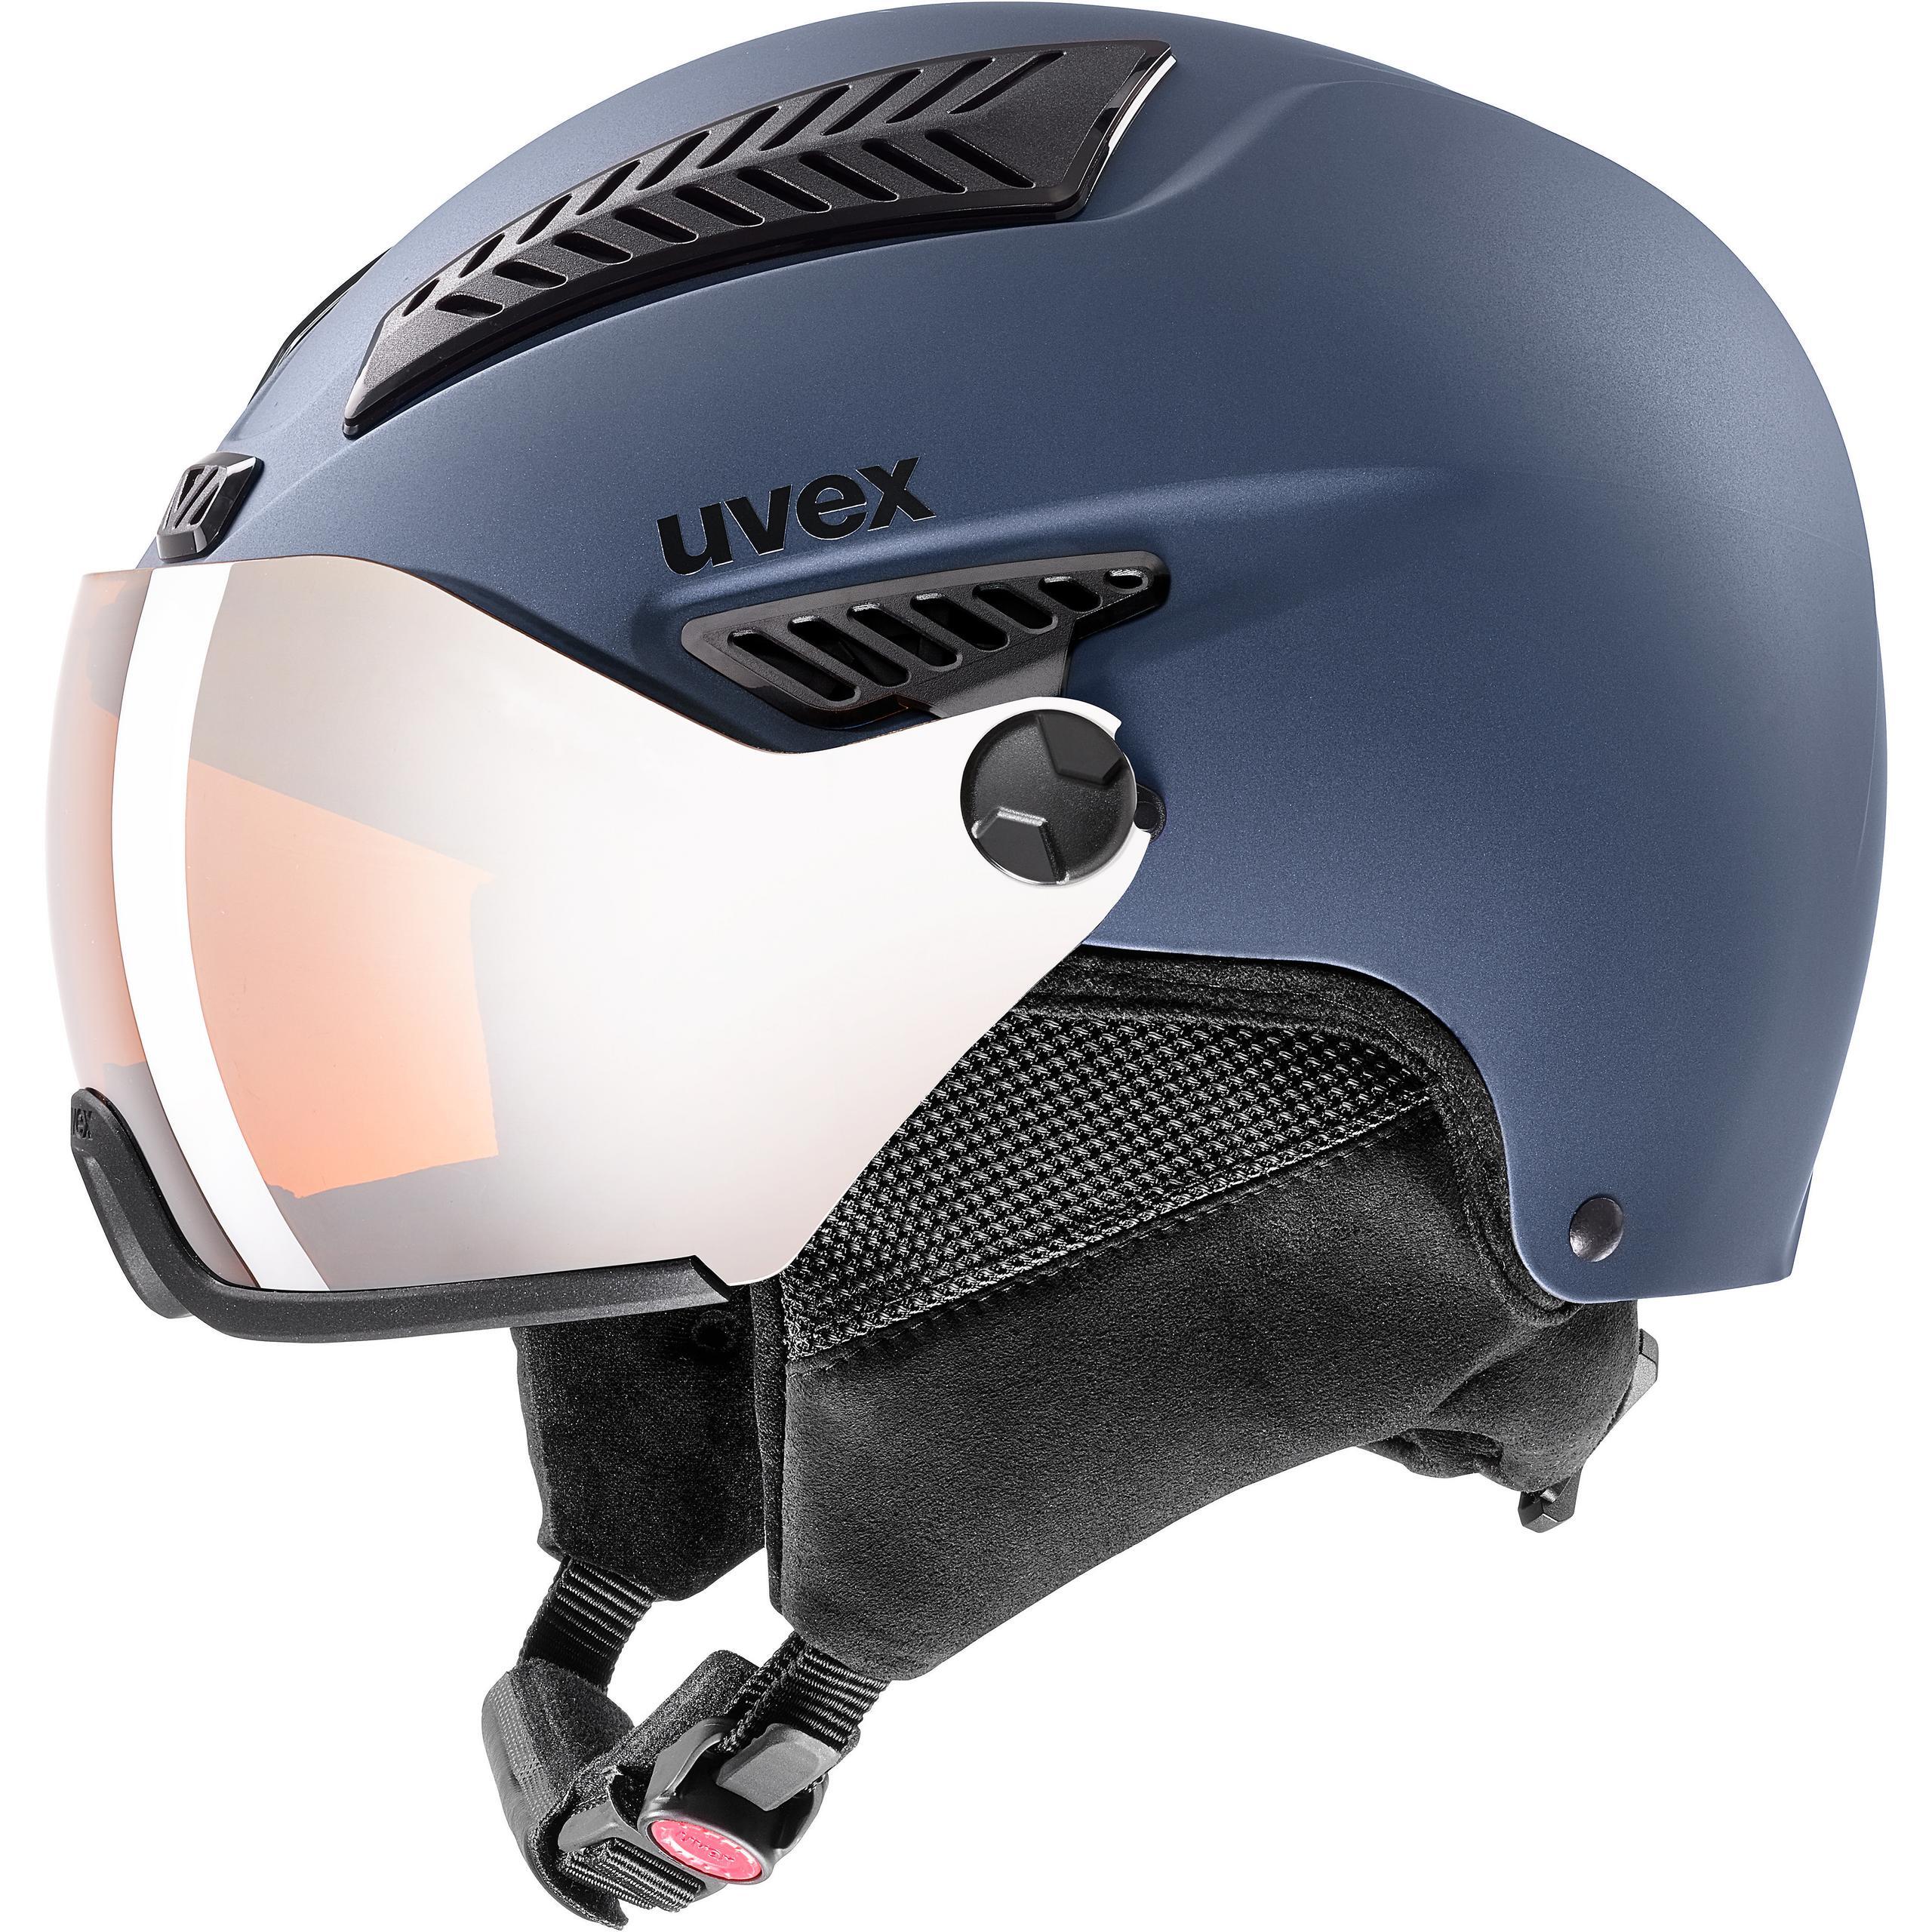 UVEX hlmt 600 visor